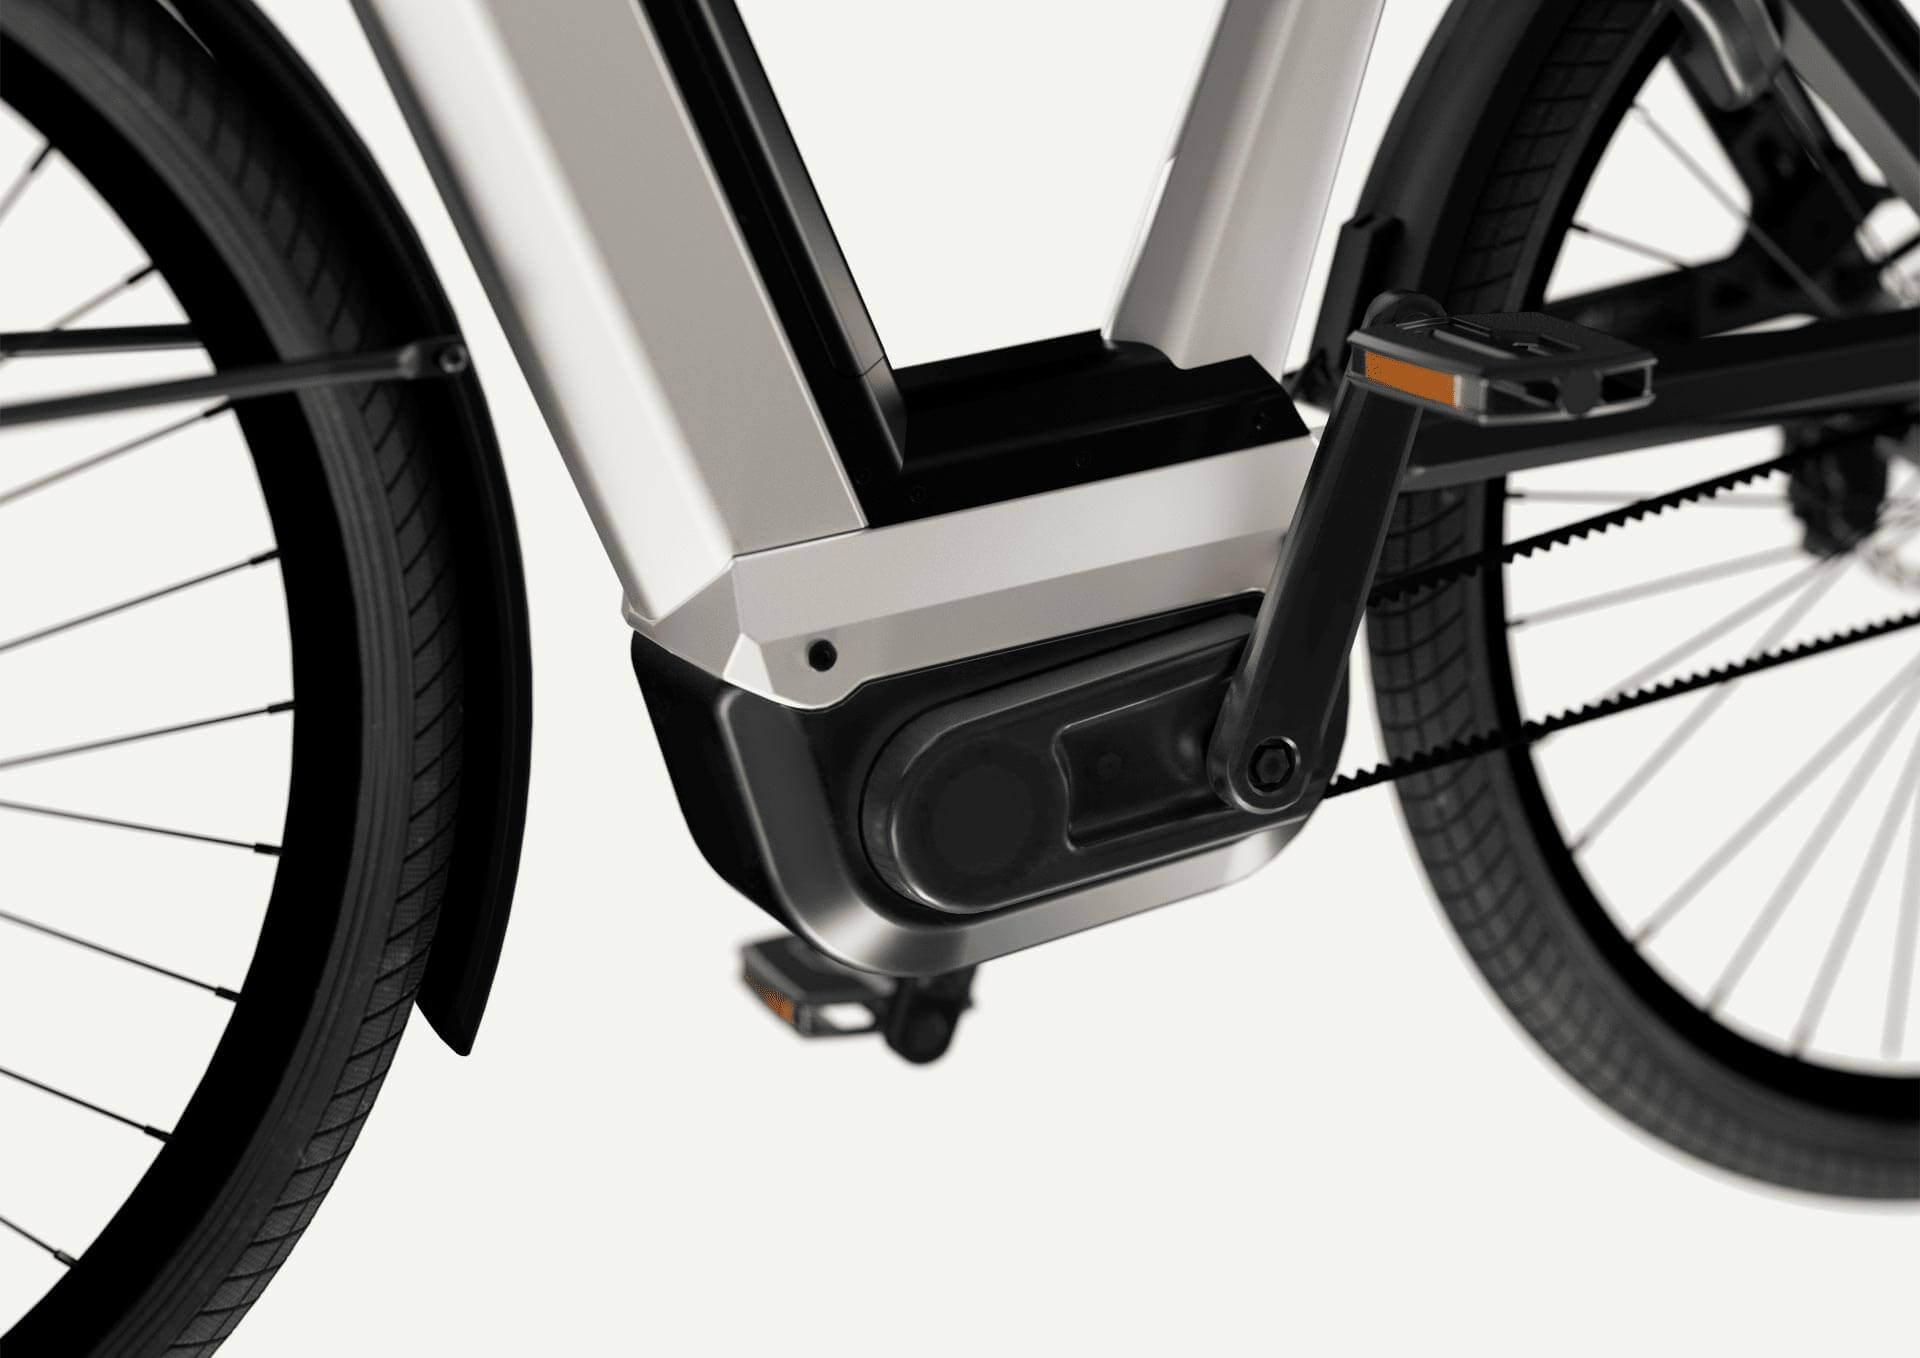 500 Wh Akku | Automatikschaltung | Concept-E-Bike - Roetz 3 09 Drive Module L v01 bdfc3822 - eBikeNews